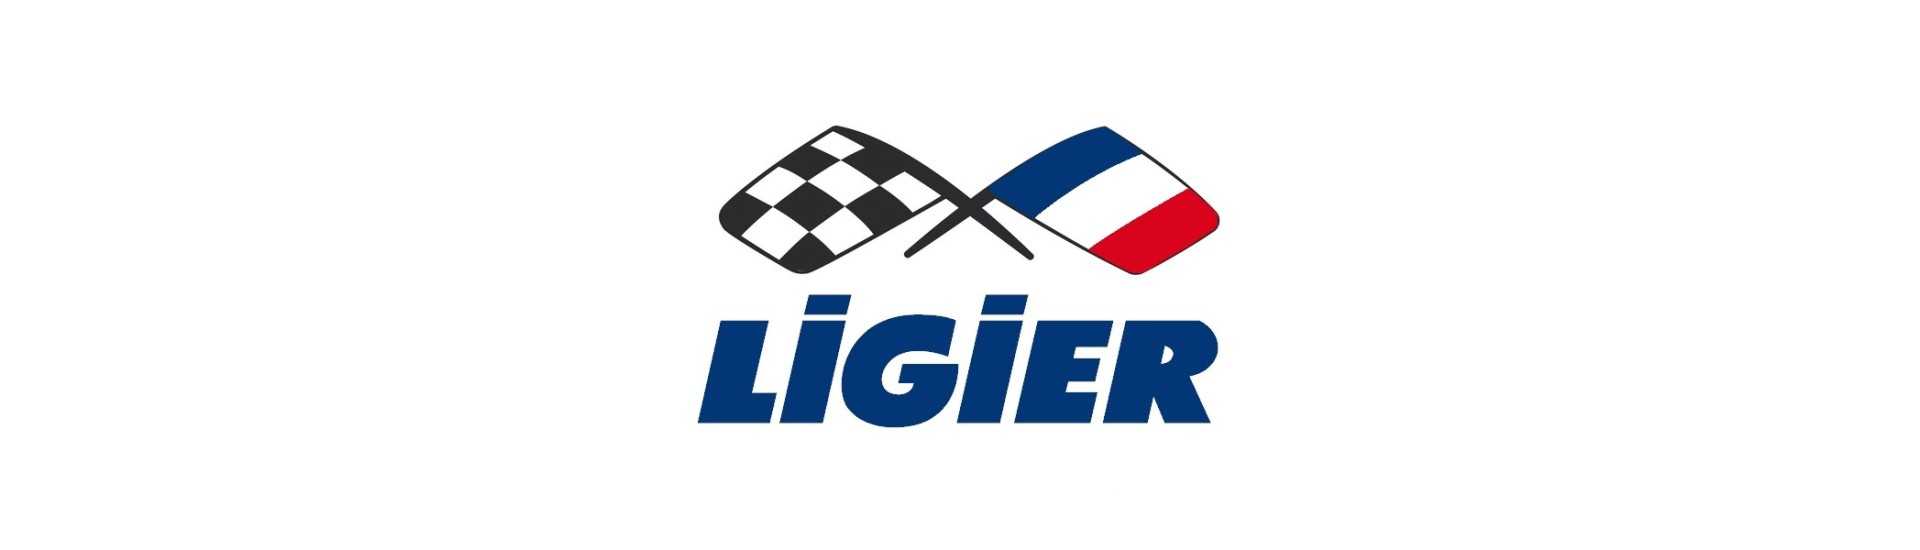 Motore elettrico al miglior prezzo per auto senza permesso Ligier